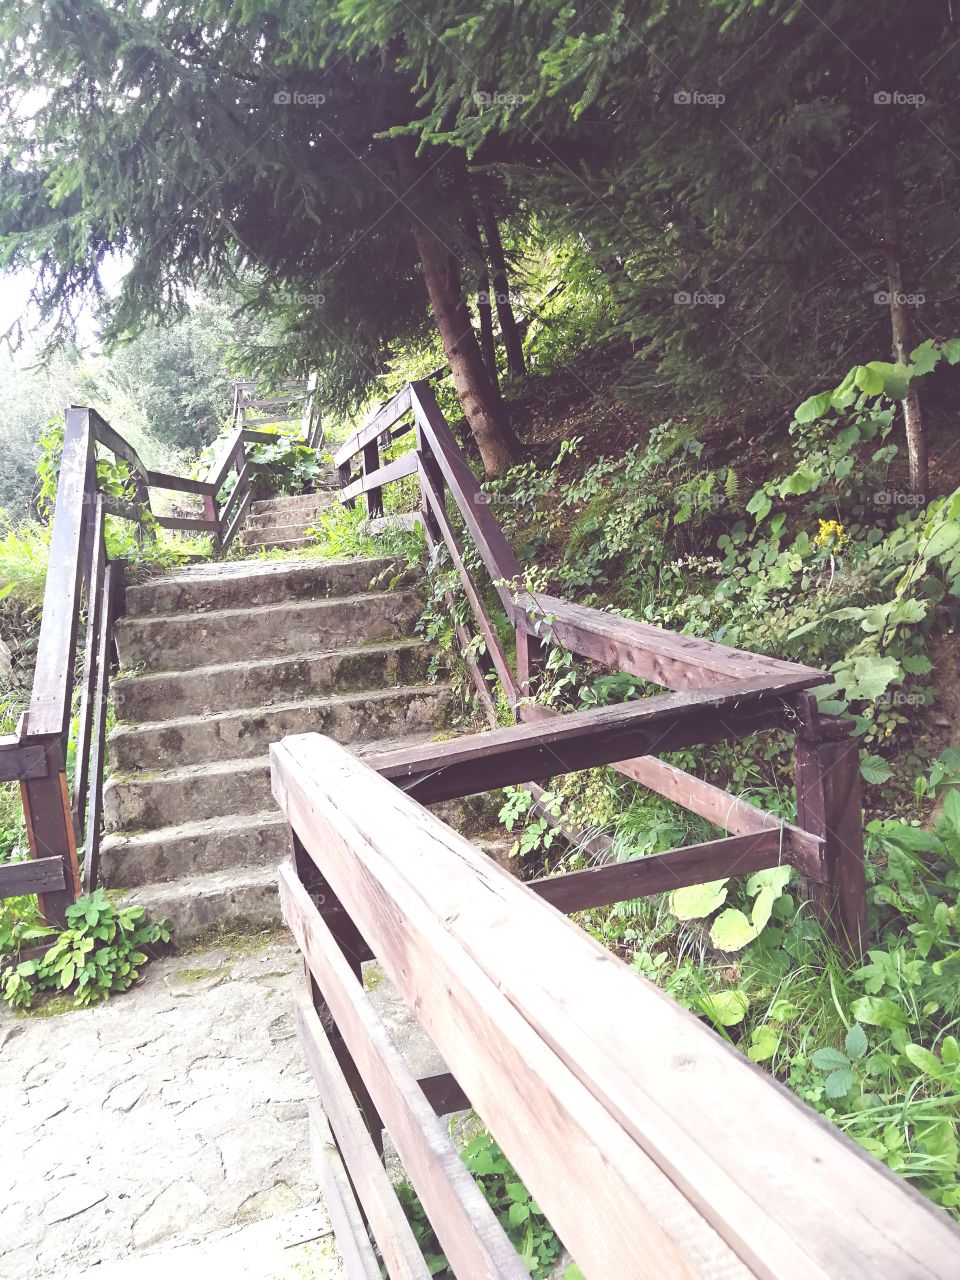 Stairways to forest! 😍